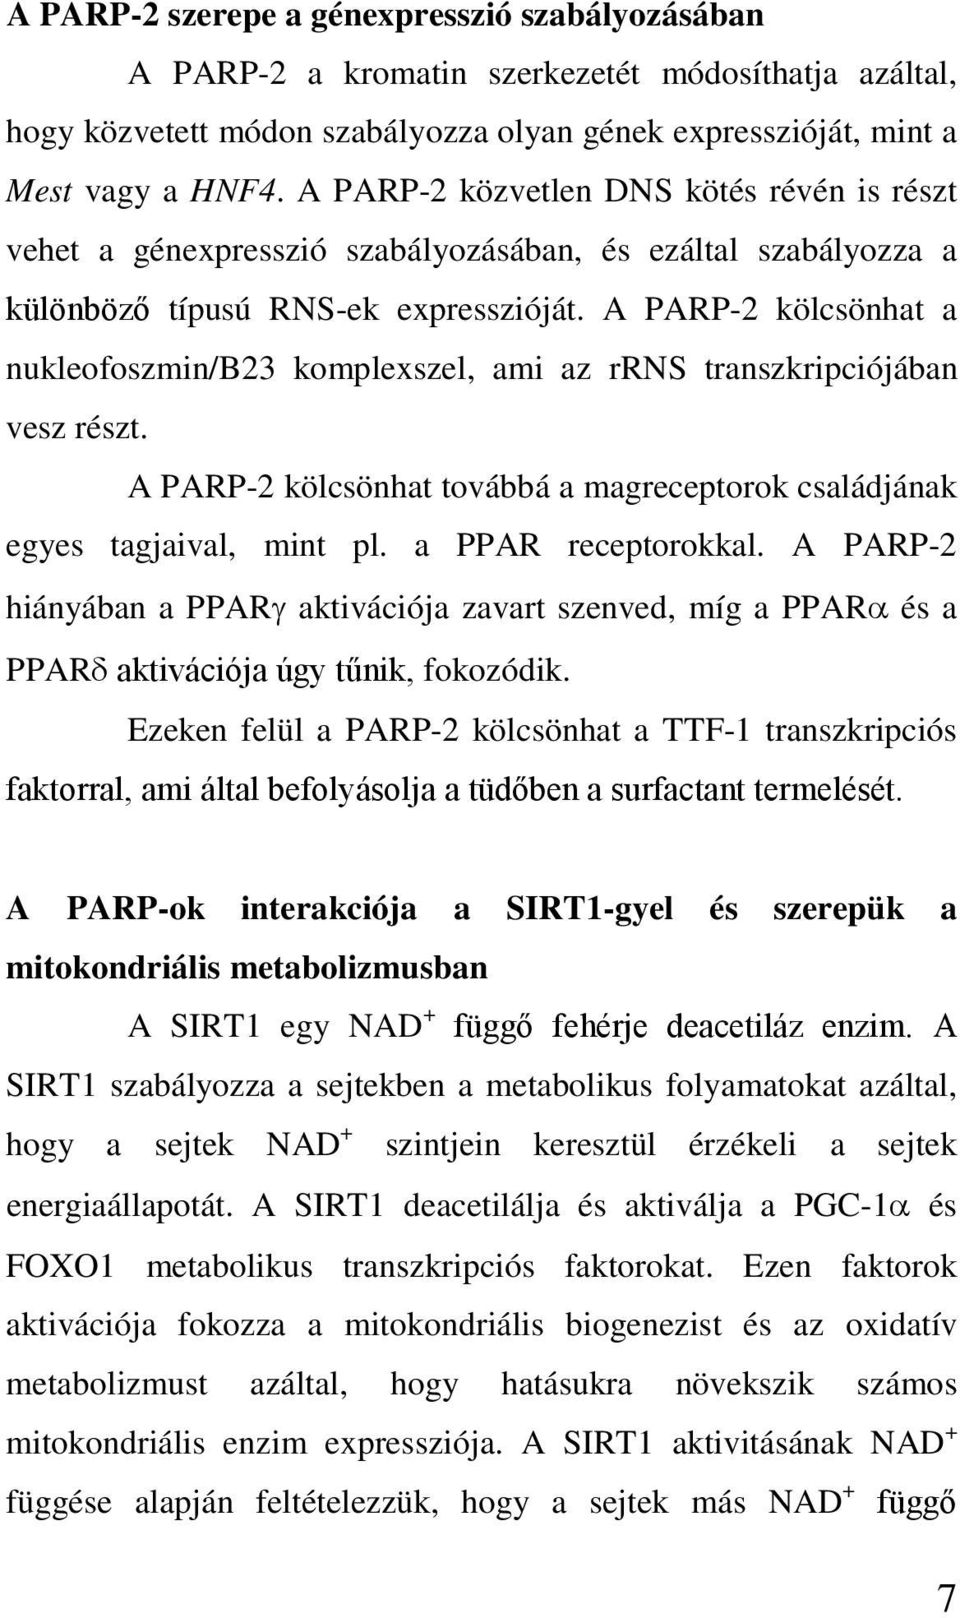 A PARP-2 kölcsönhat a nukleofoszmin/b23 komplexszel, ami az rrns transzkripciójában vesz részt. A PARP-2 kölcsönhat továbbá a magreceptorok családjának egyes tagjaival, mint pl. a PPAR receptorokkal.